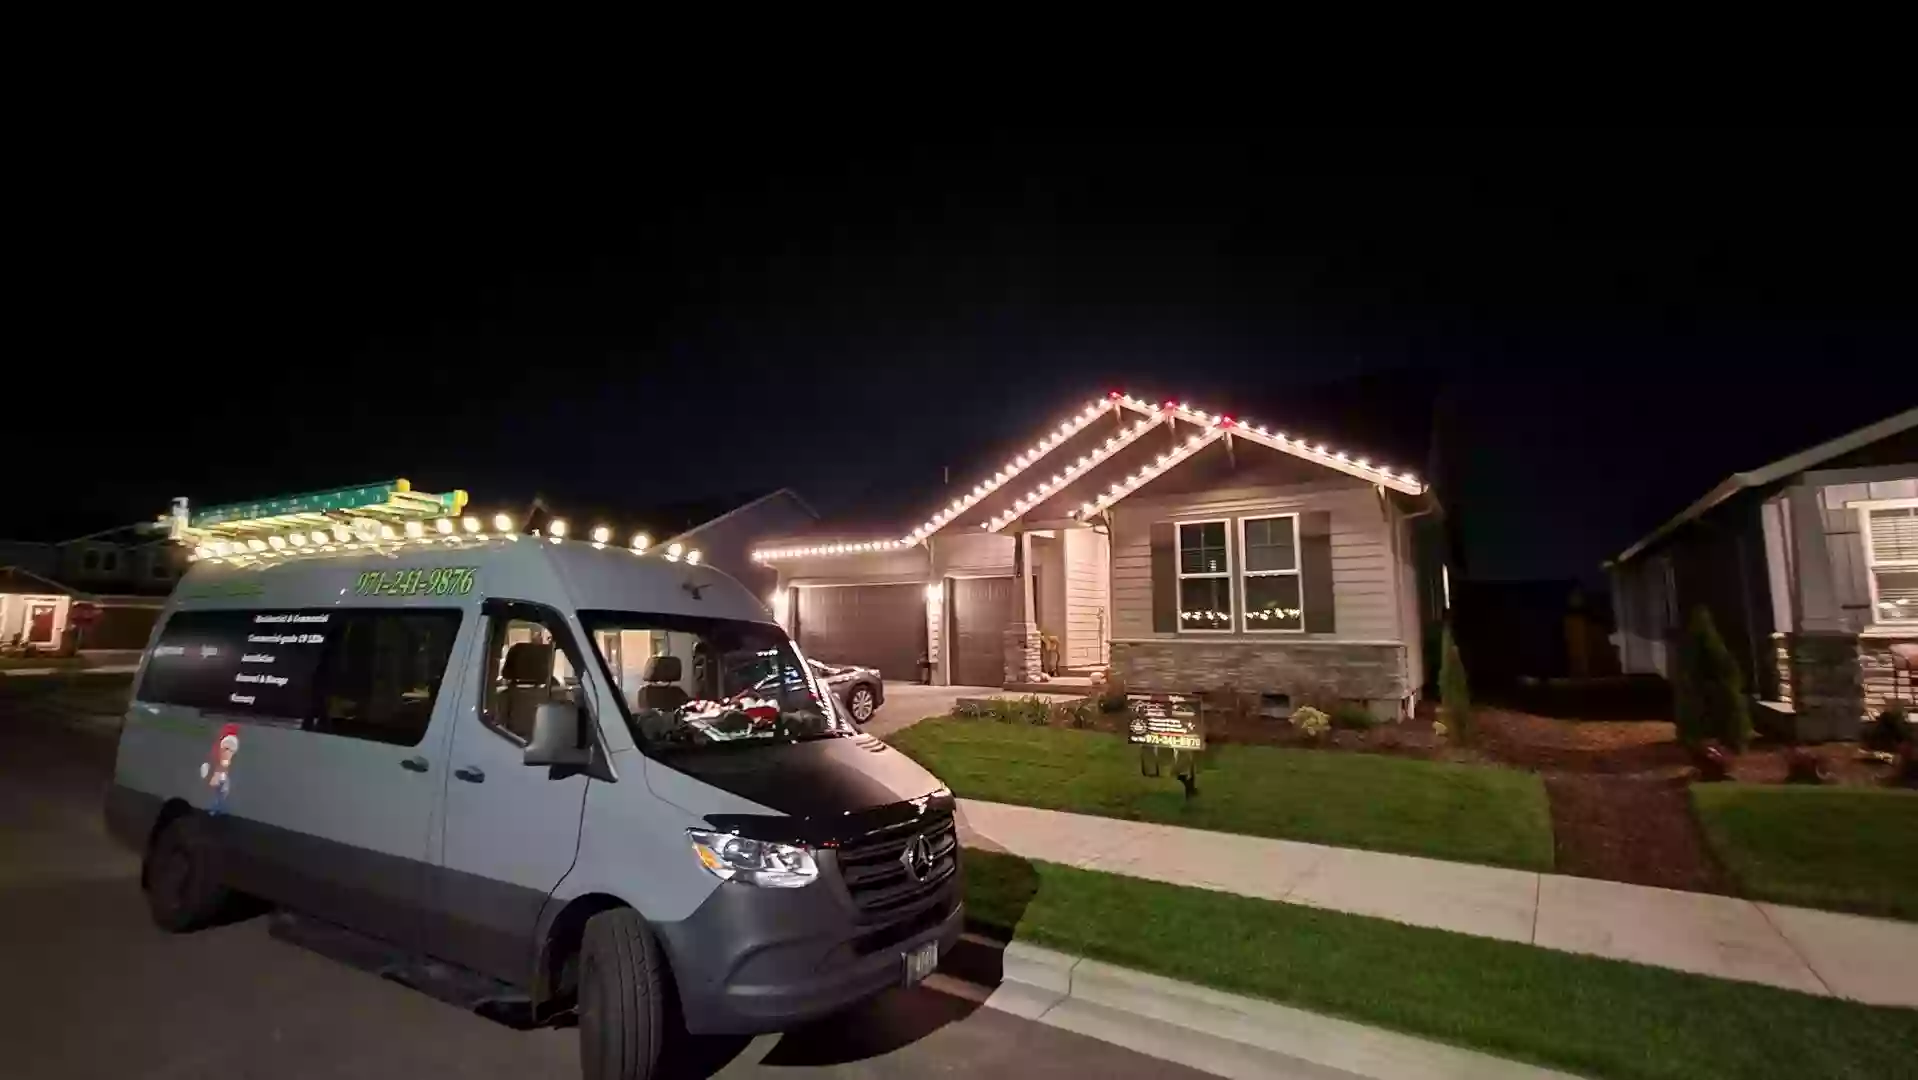 Premium Holiday Lights and Christmas lighting by Virtue Handyman Inc